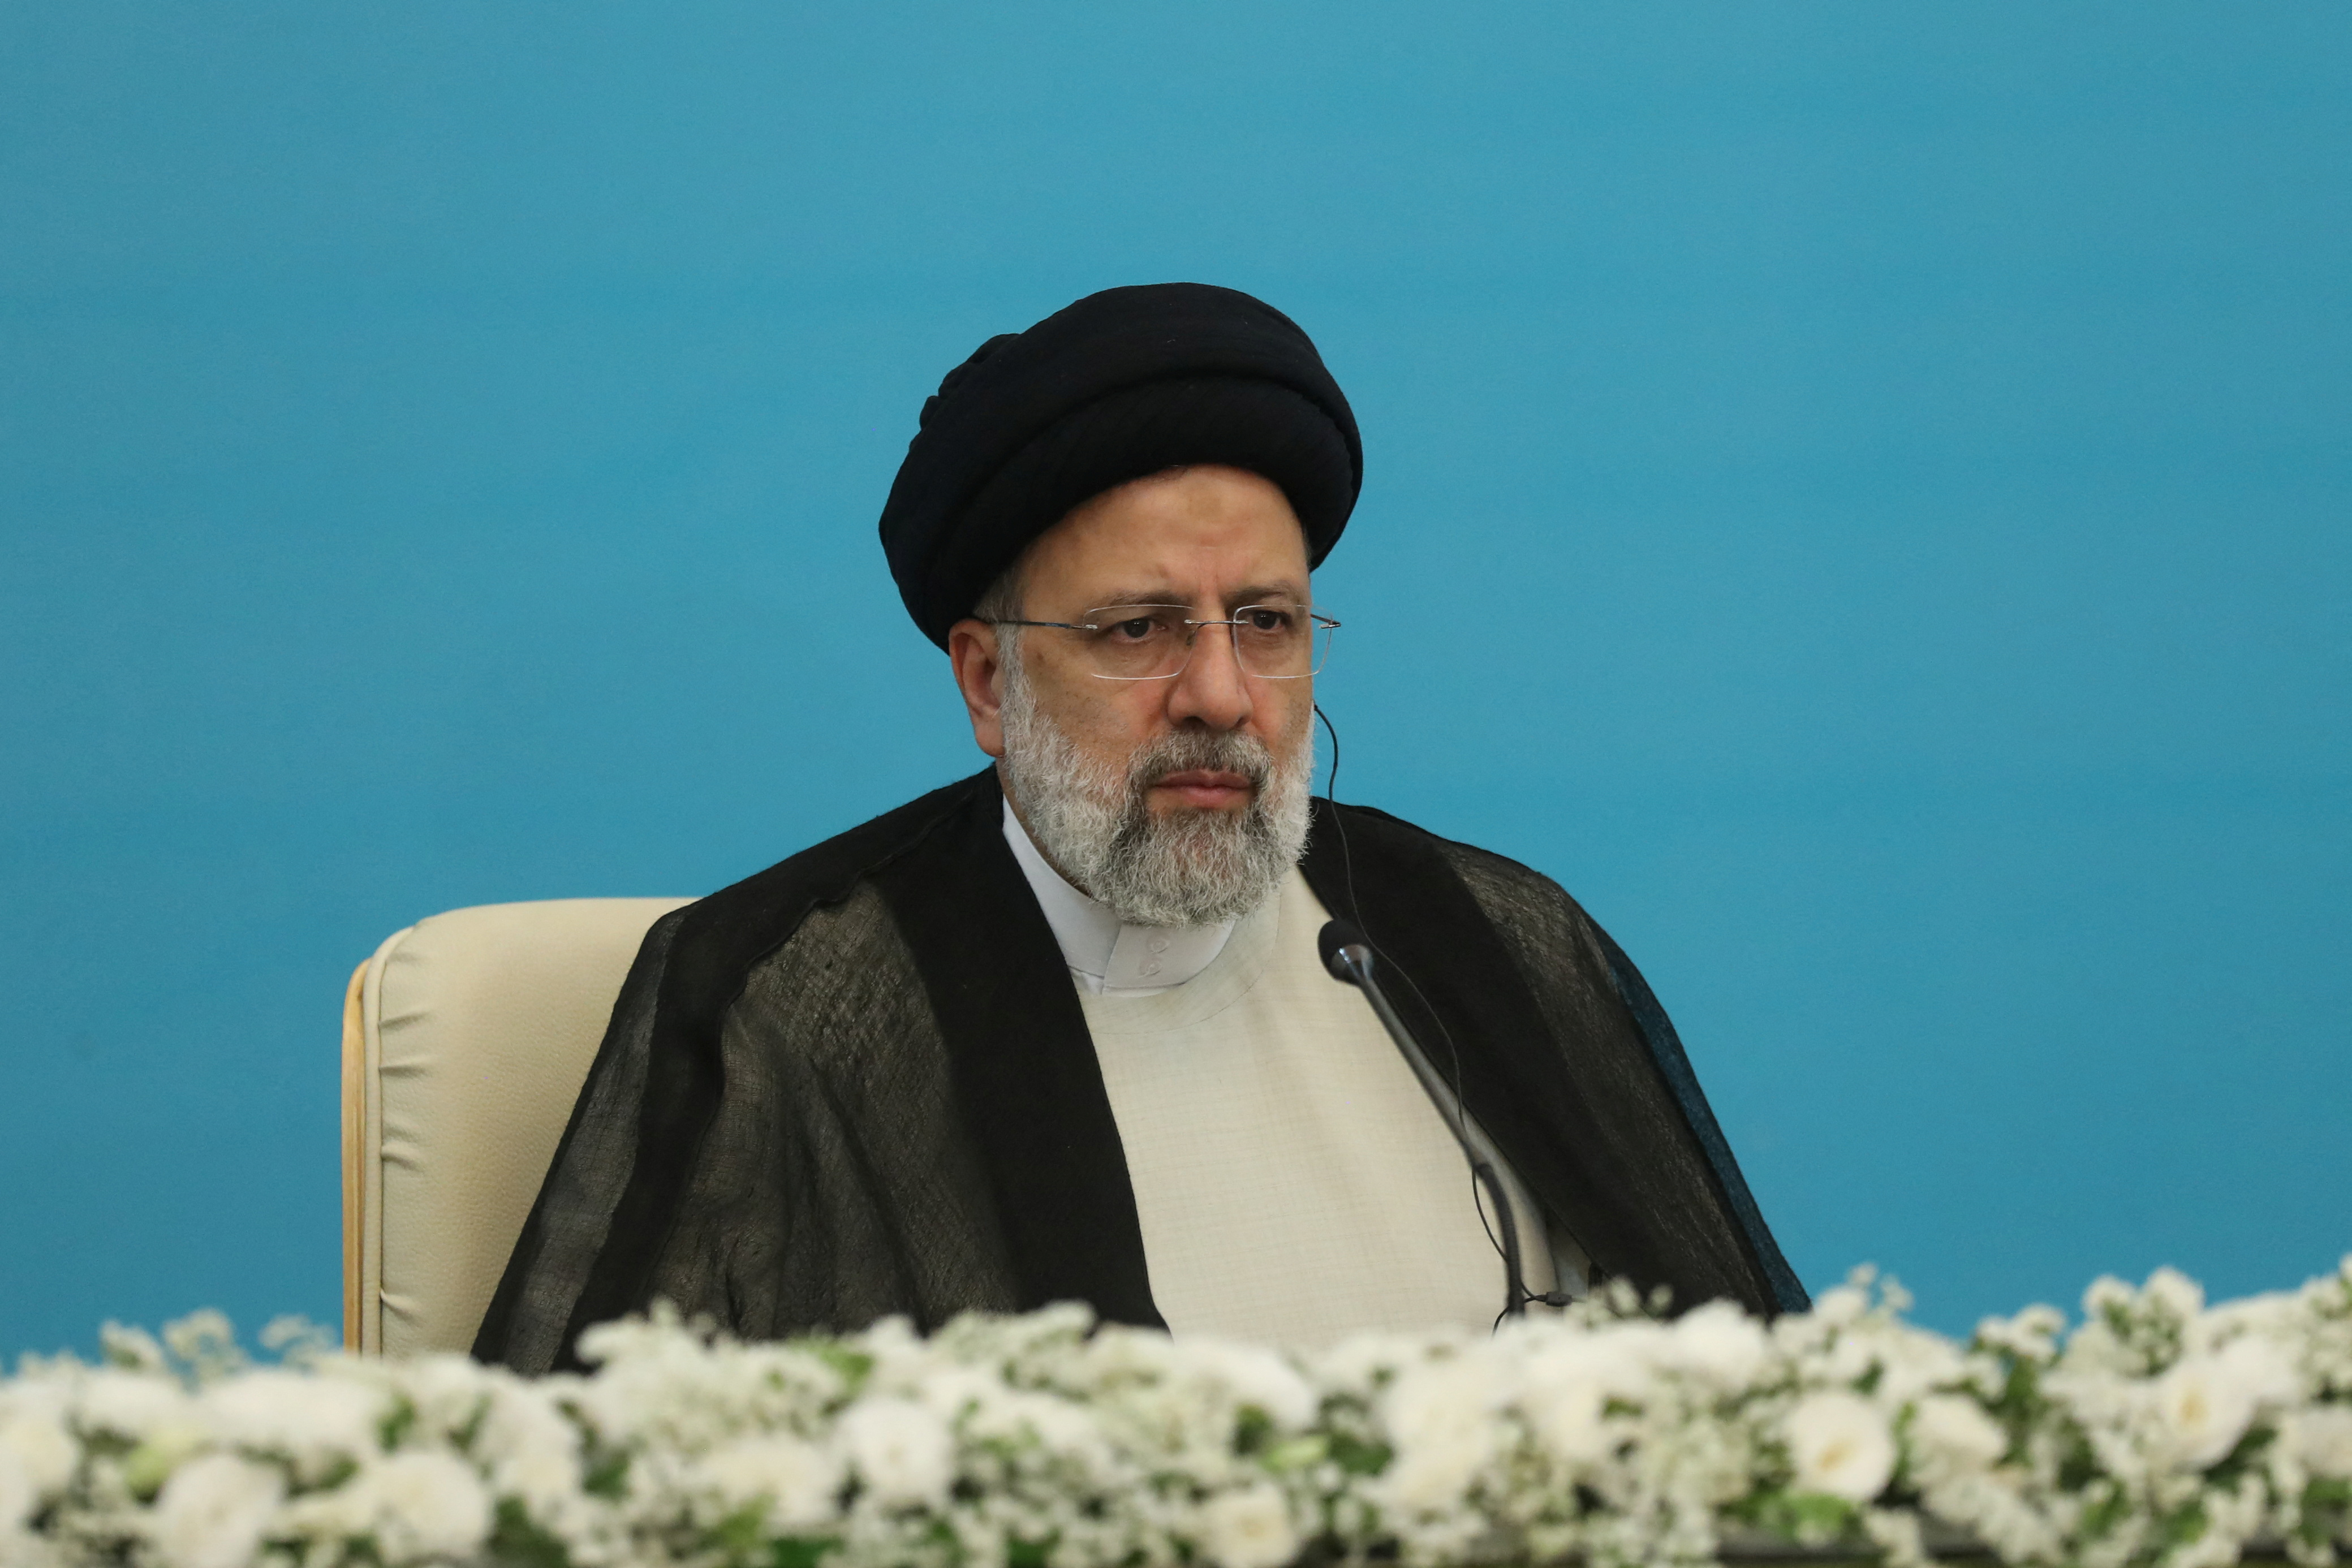 El presidente de Irán puso en duda el Holocausto y dijo que aún debe ser investigado